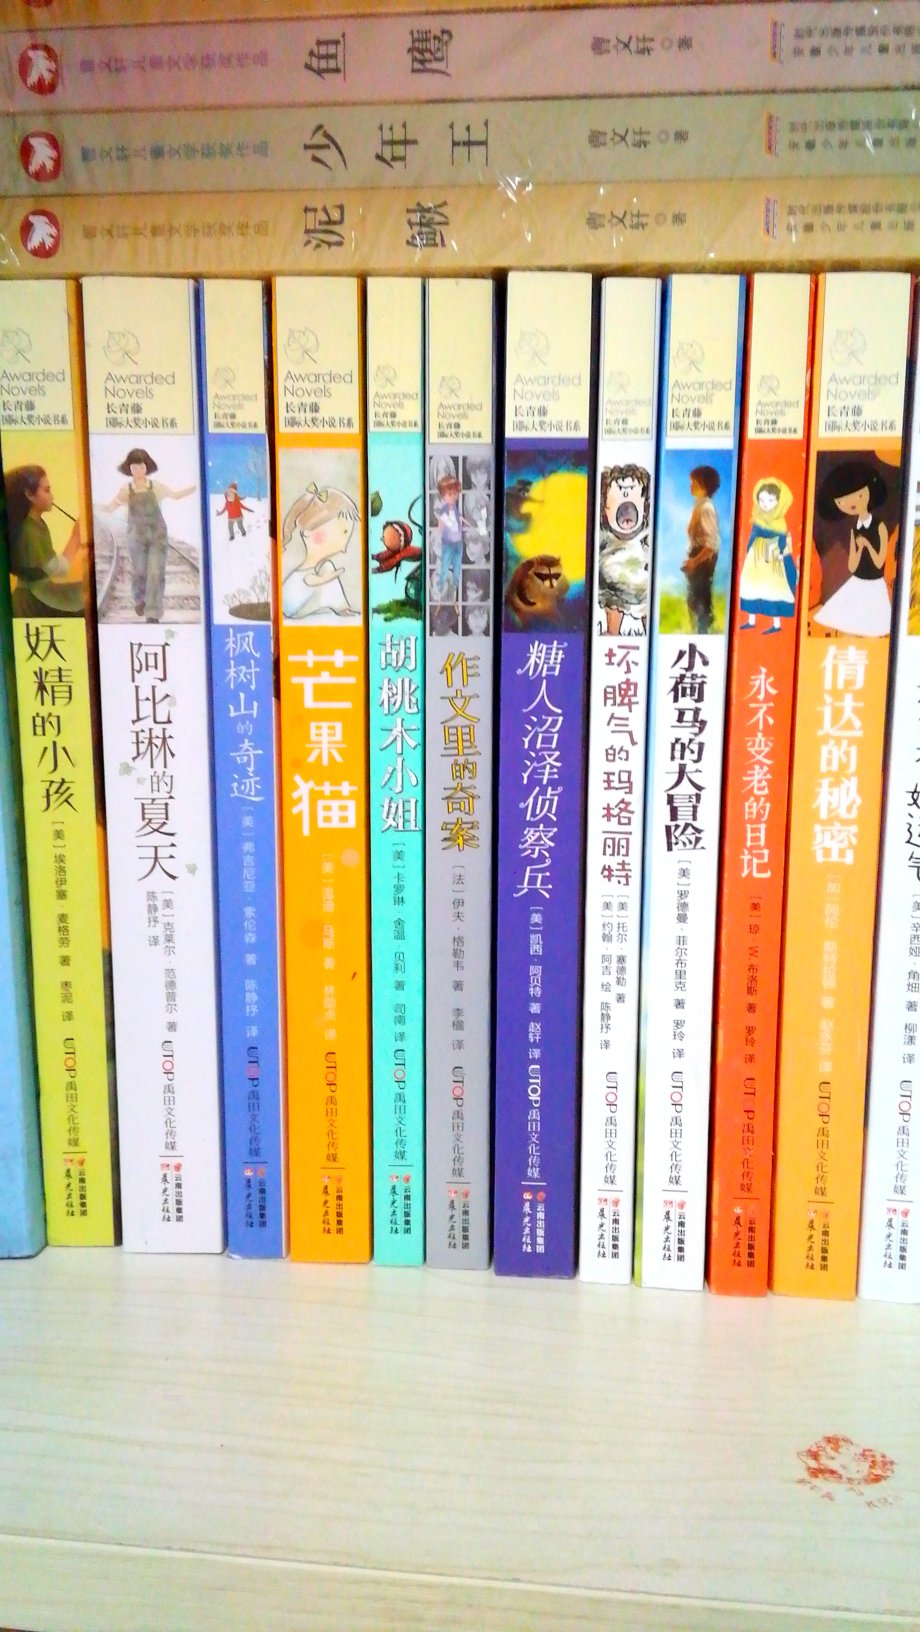 长青滕国际大奖小说，共12本，双Ⅱ搞活动买的。孩子很喜欢。